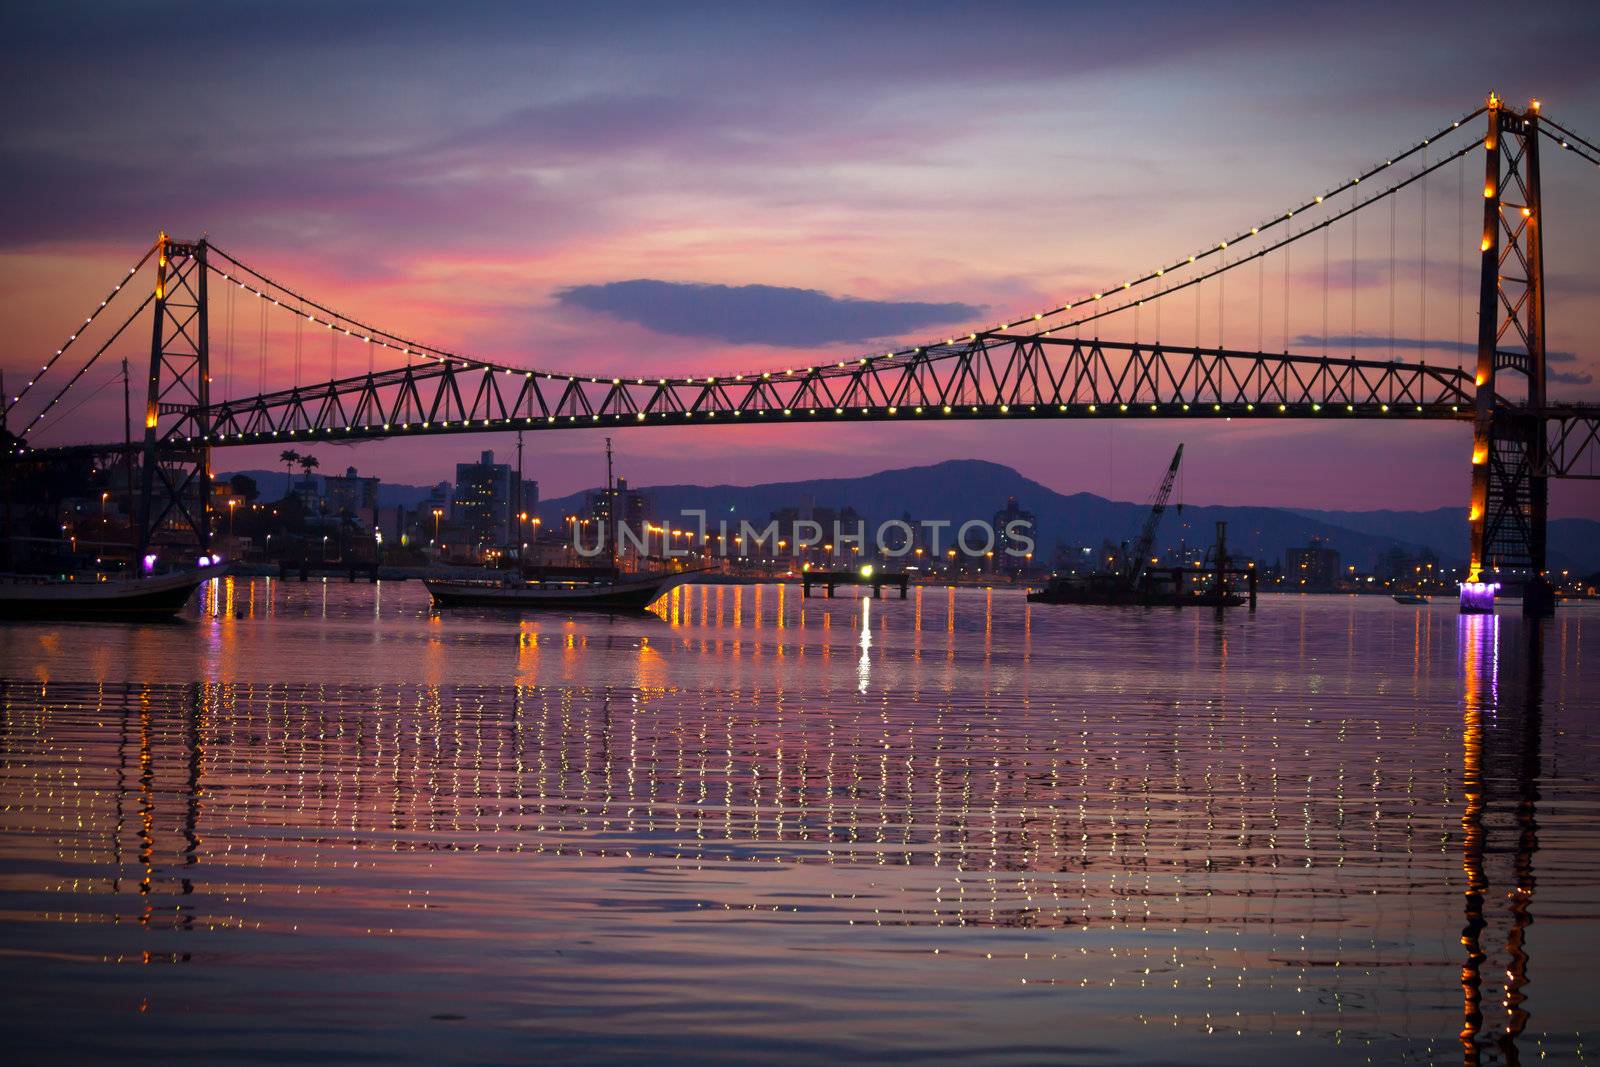 Bridge at Sunset by Daniel_Wiedemann